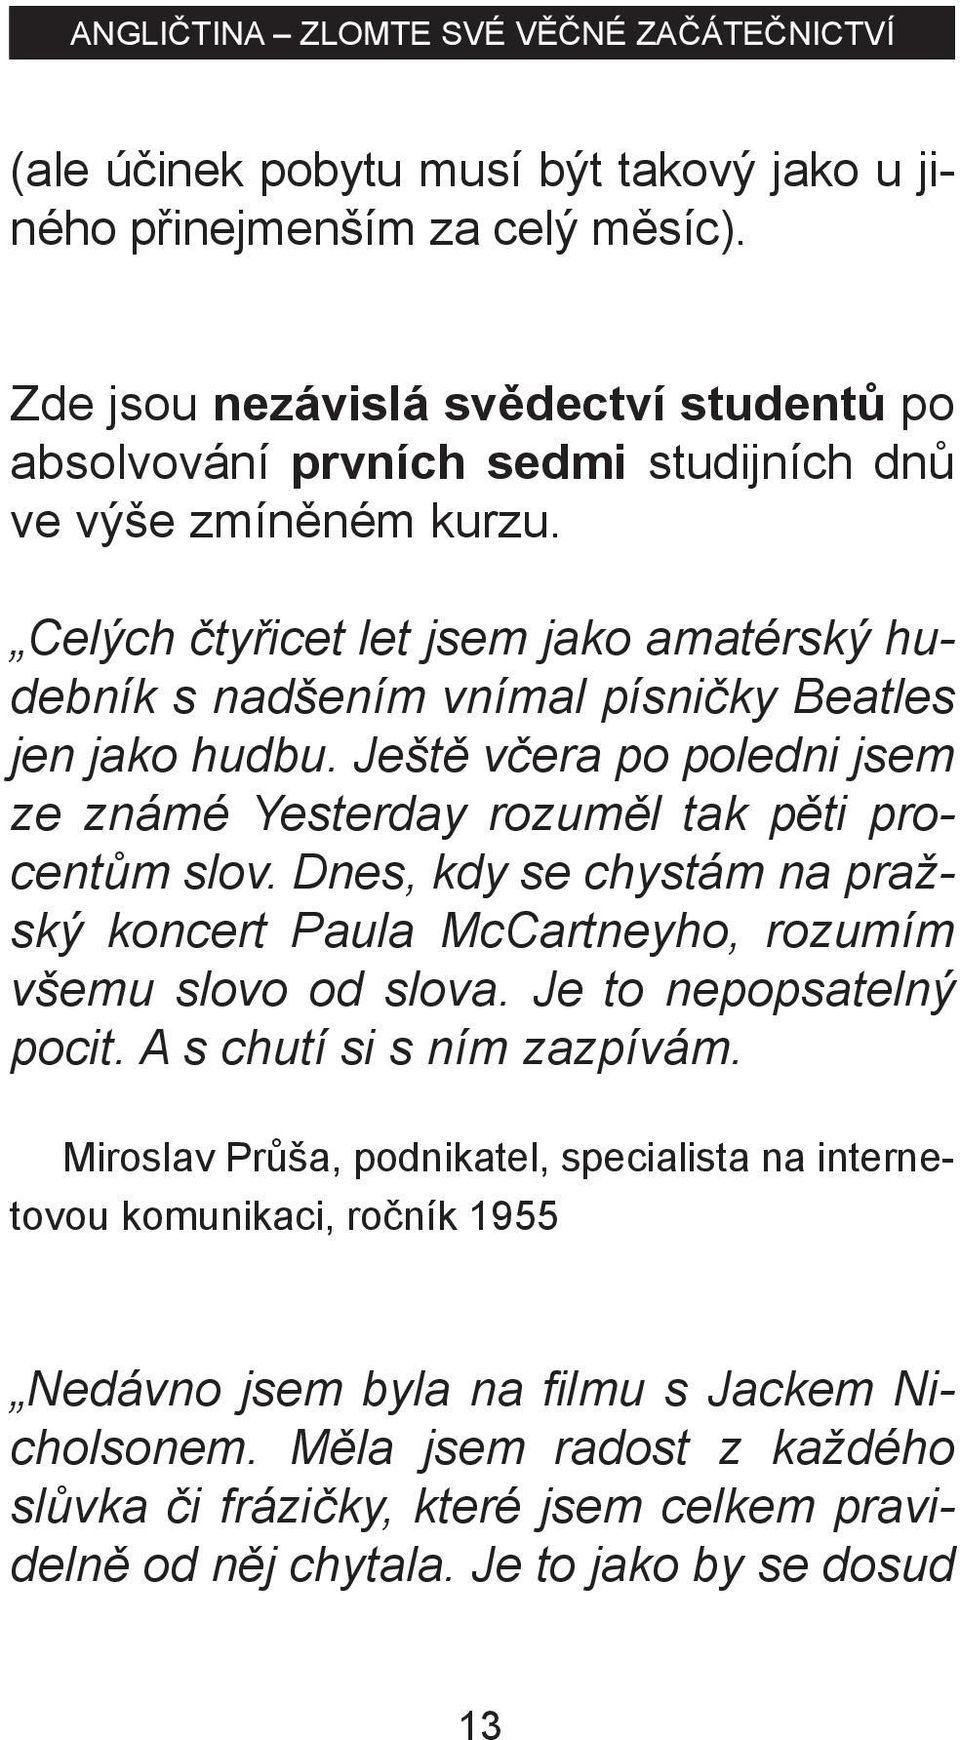 Dnes, kdy se chystám na pražský koncert Paula McCartneyho, rozumím všemu slovo od slova. Je to nepopsatelný pocit. A s chutí si s ním zazpívám.